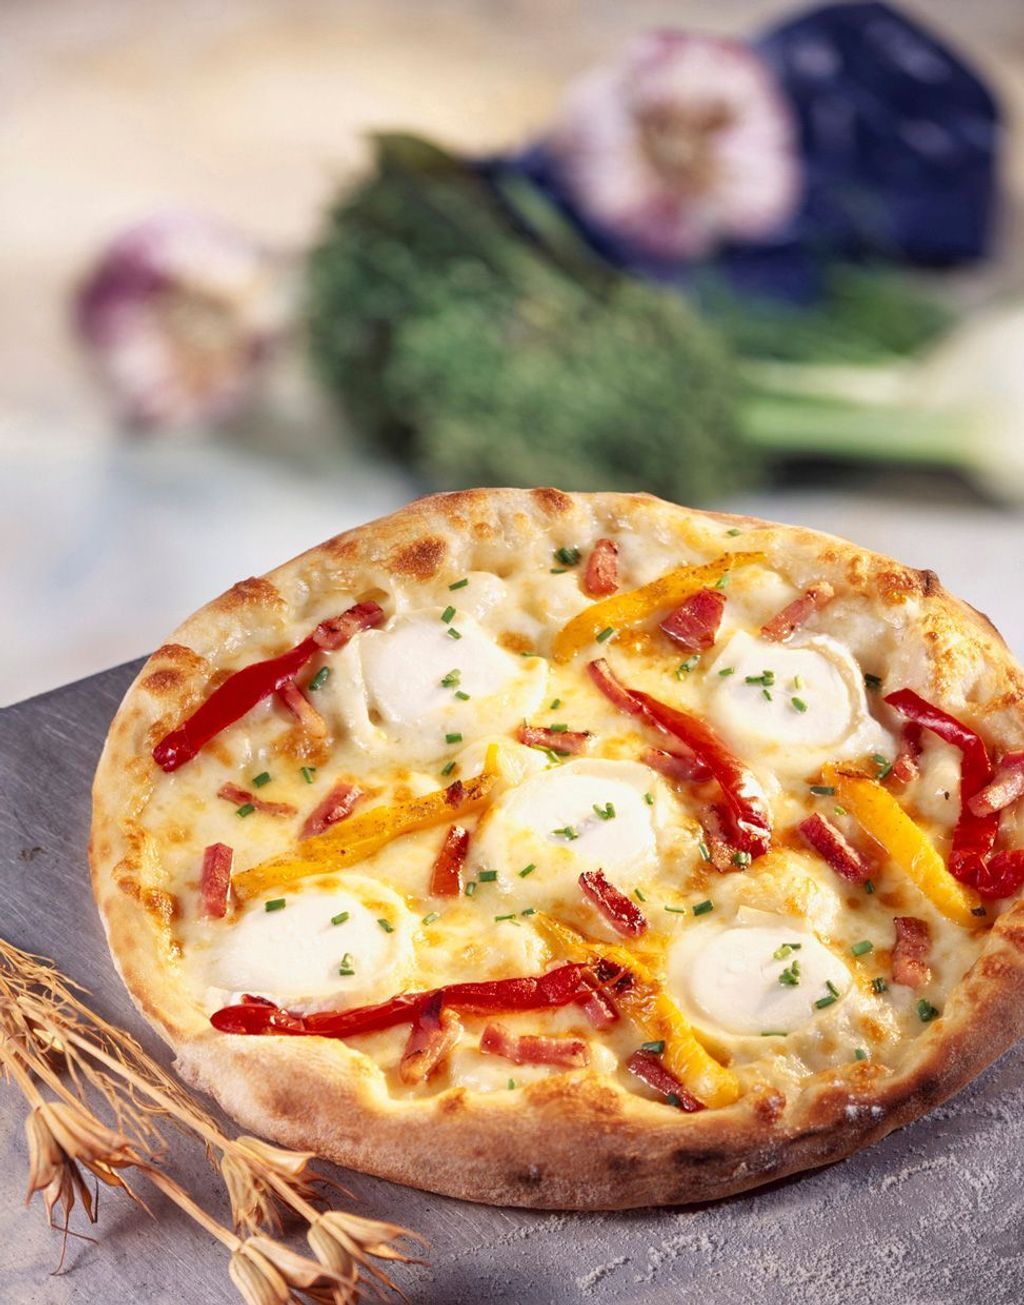 Ziegenkäse-Pizza mit Speck: Das Rezept zum Selberbacken